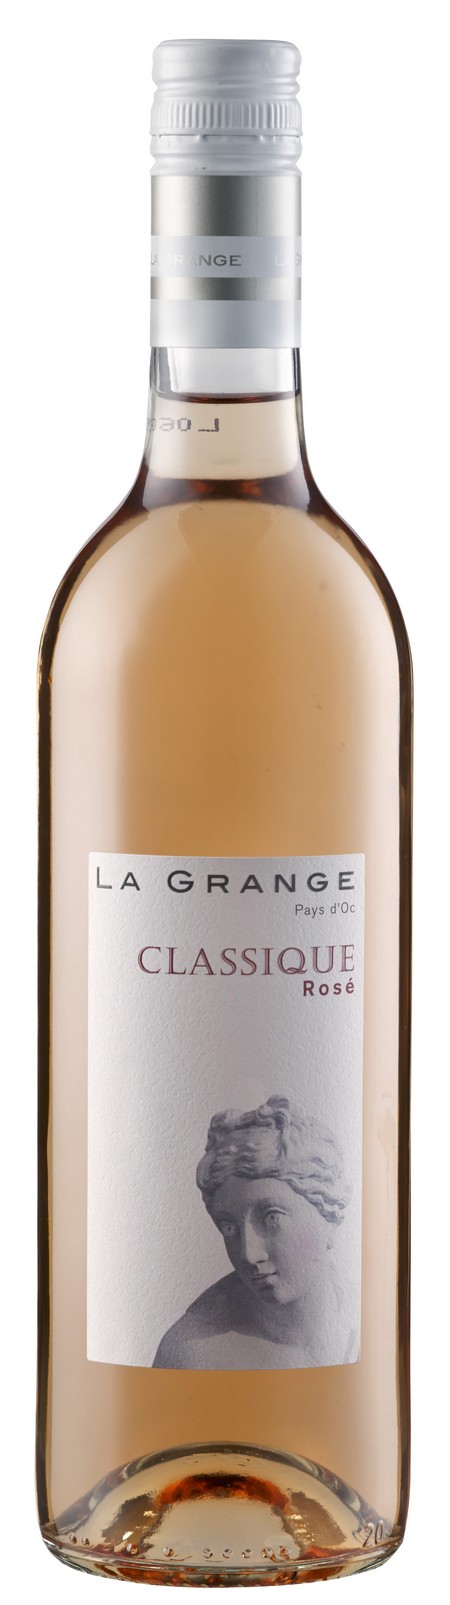 la-grange-classique-rose-igp-pays-d-oc-2014